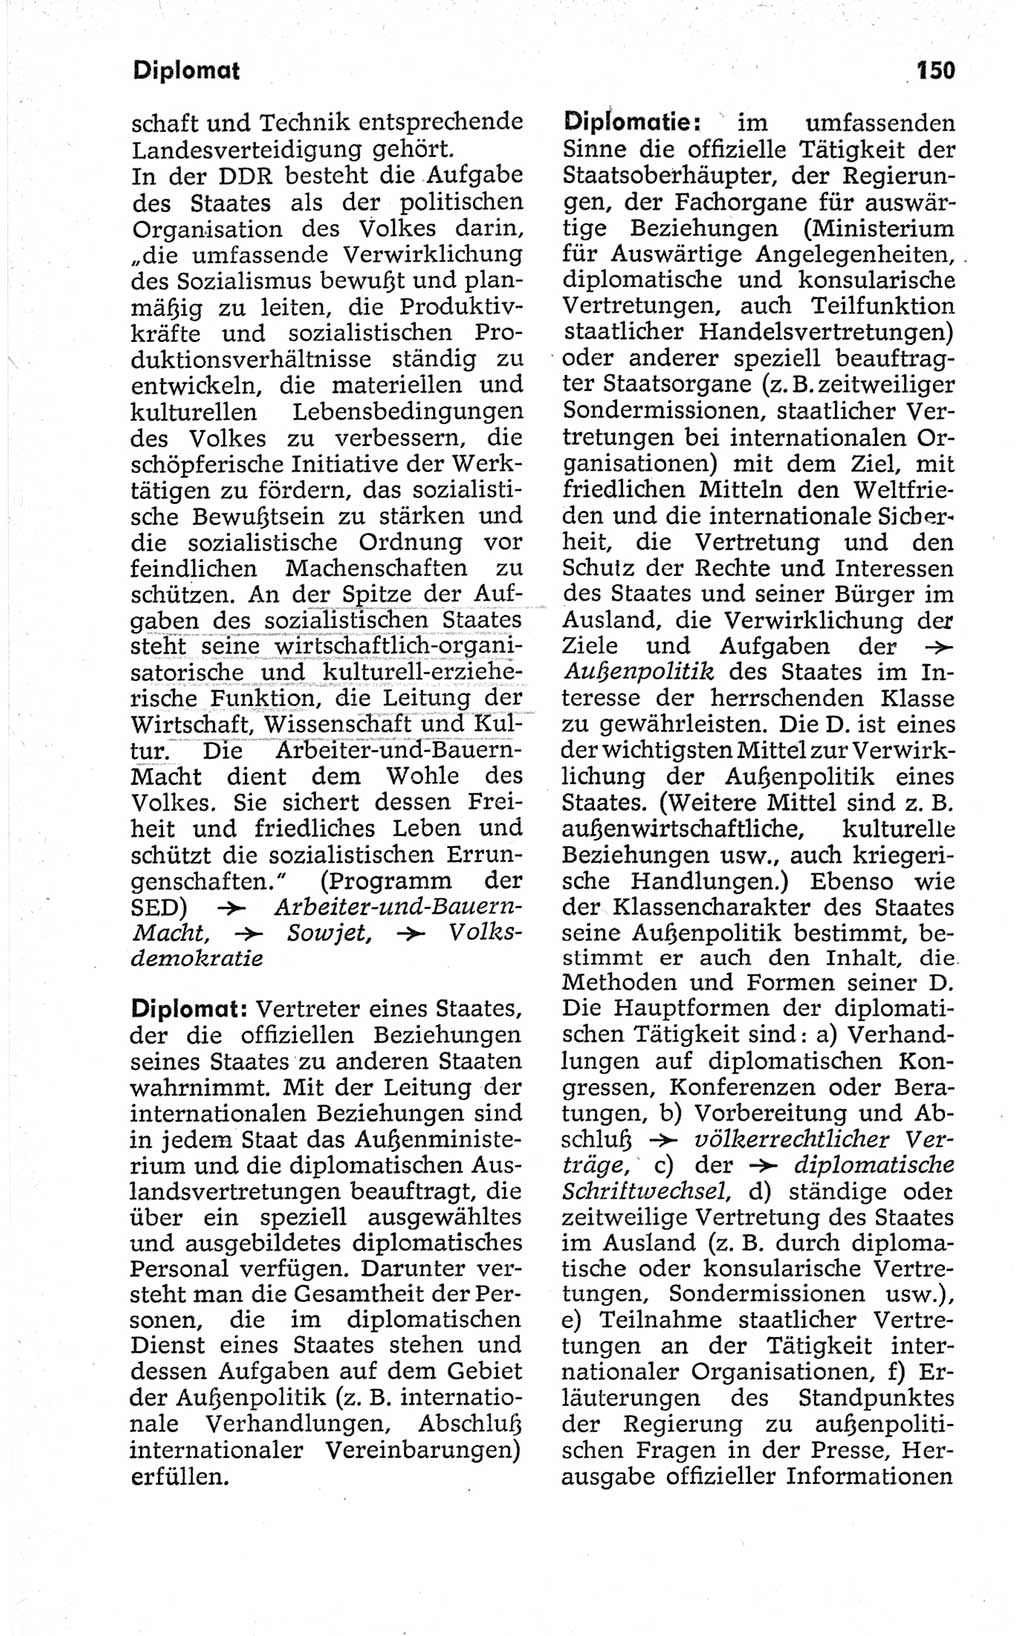 Kleines politisches Wörterbuch [Deutsche Demokratische Republik (DDR)] 1967, Seite 150 (Kl. pol. Wb. DDR 1967, S. 150)